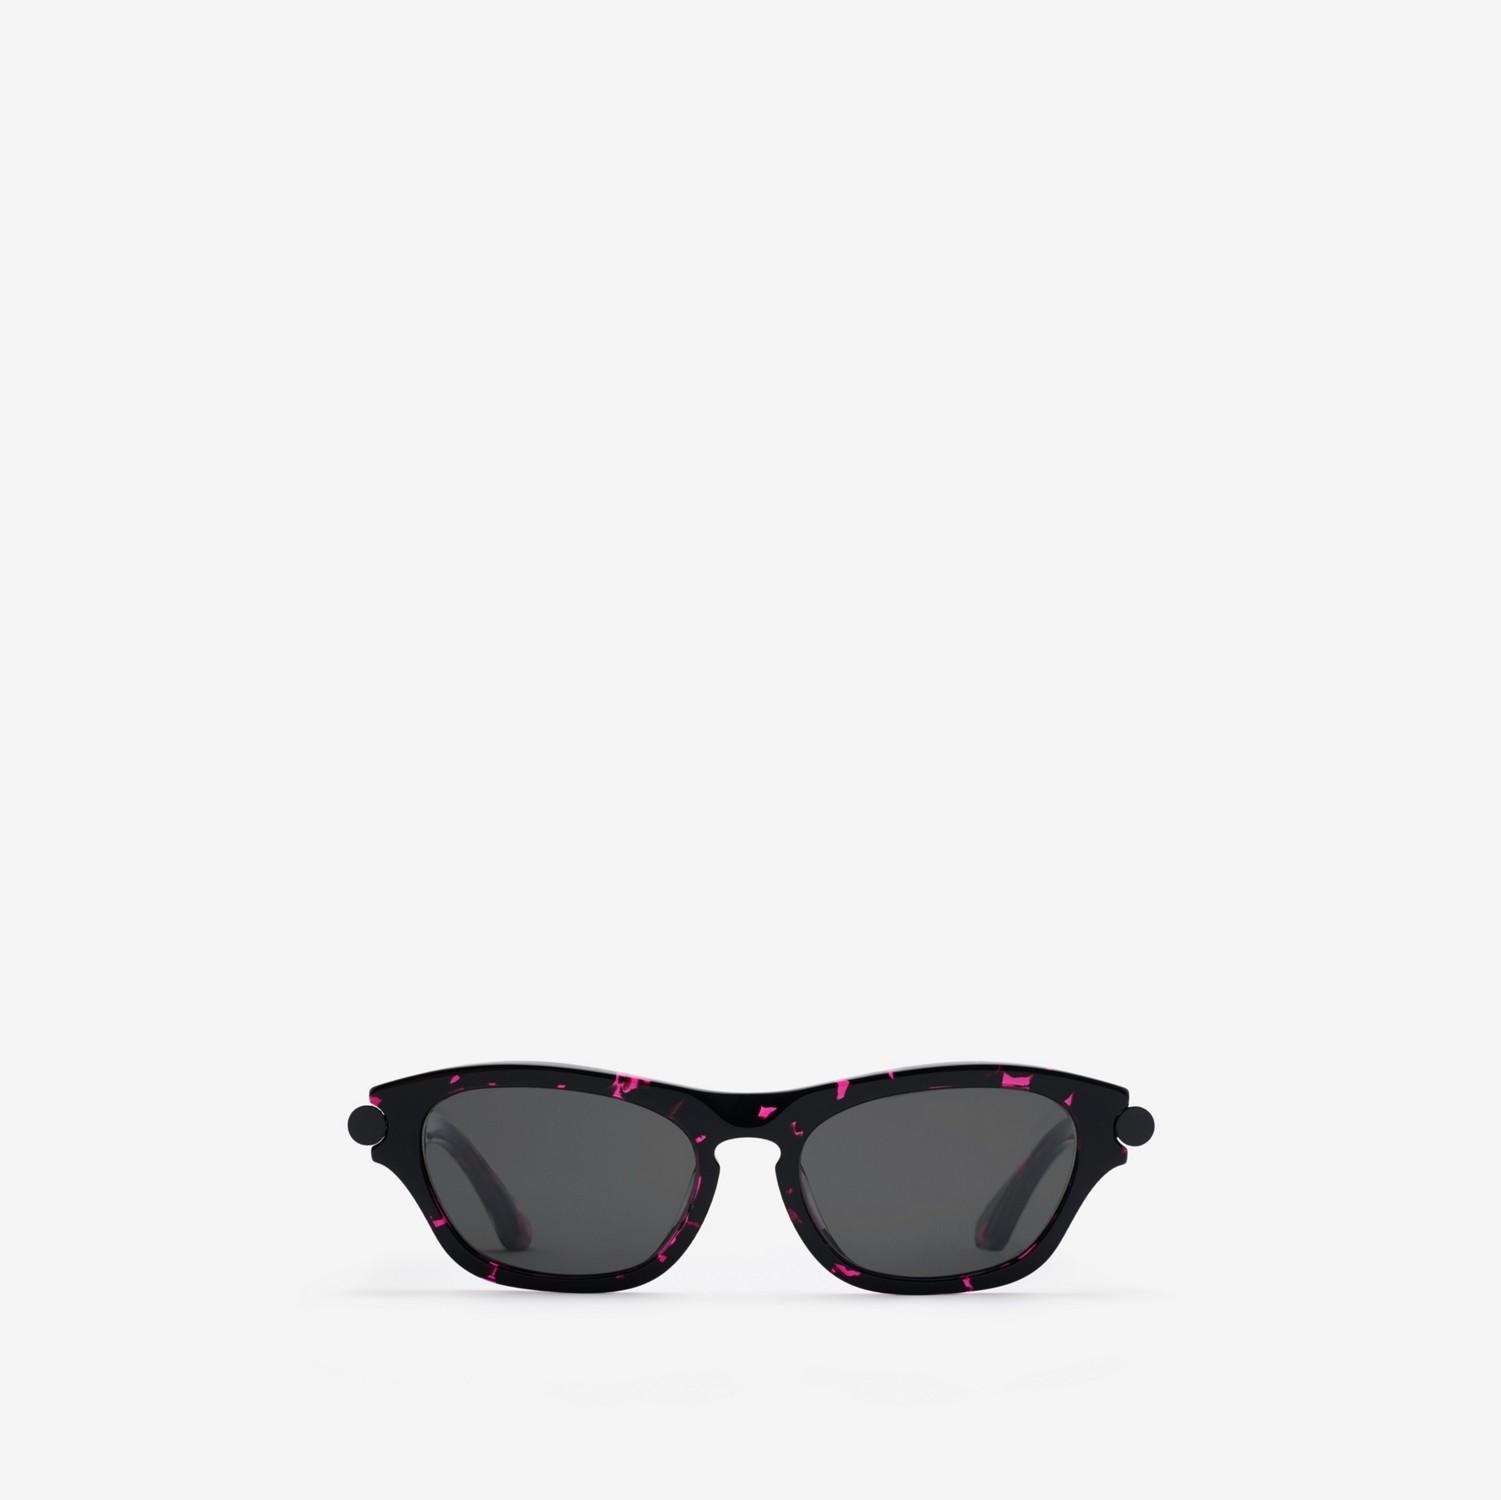 Tubular Oval Sunglasses by BURBERRY